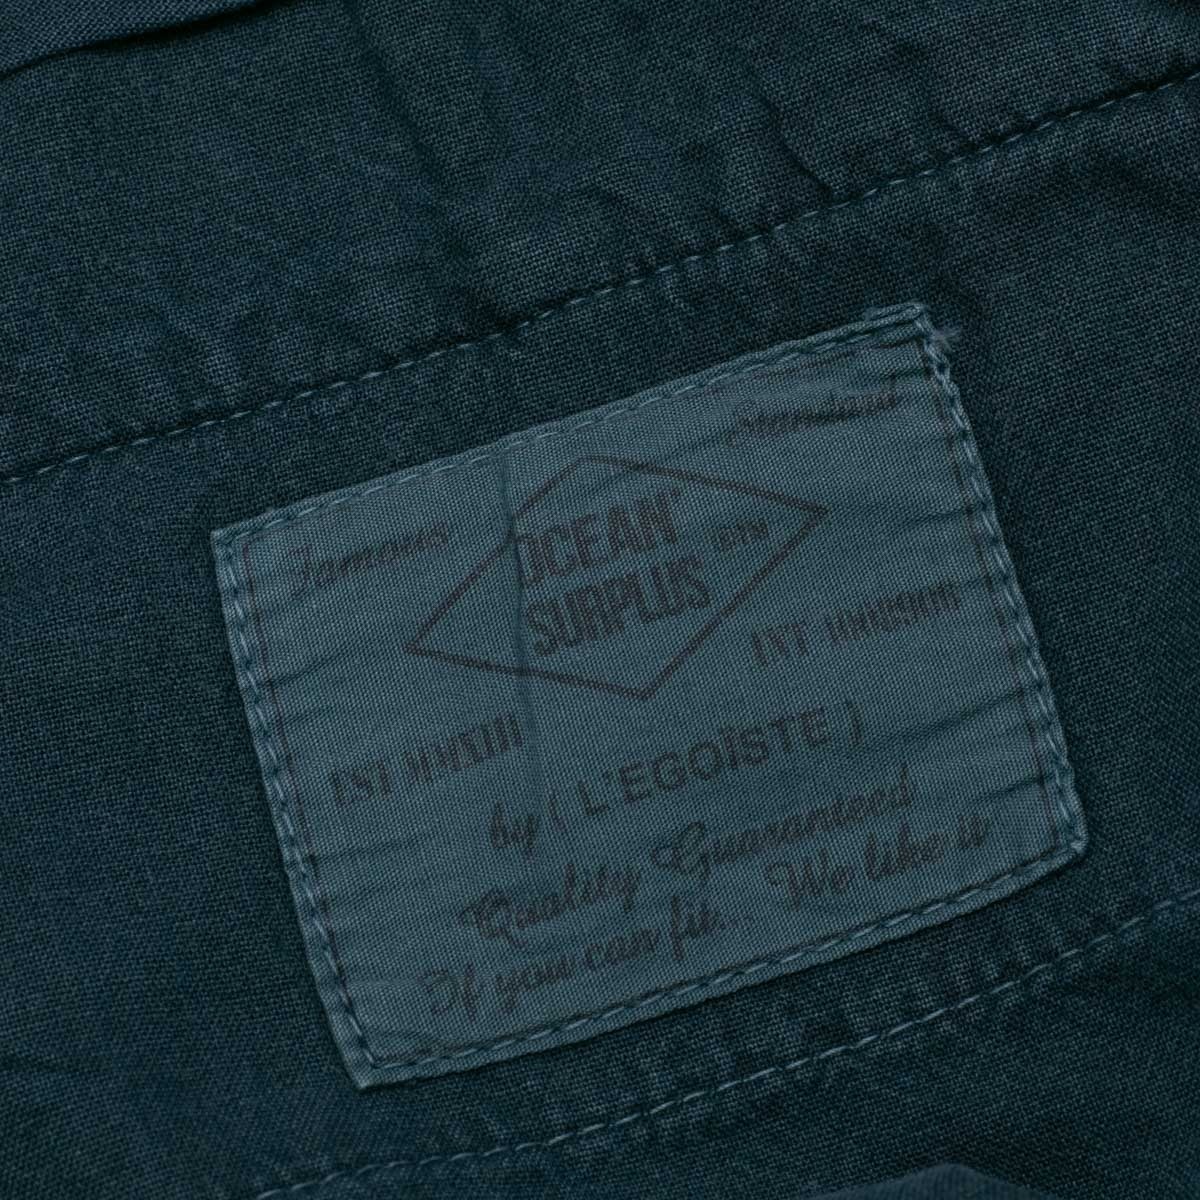 pantalon-a-pinces-coton-chevron-marine-detail-etiquette